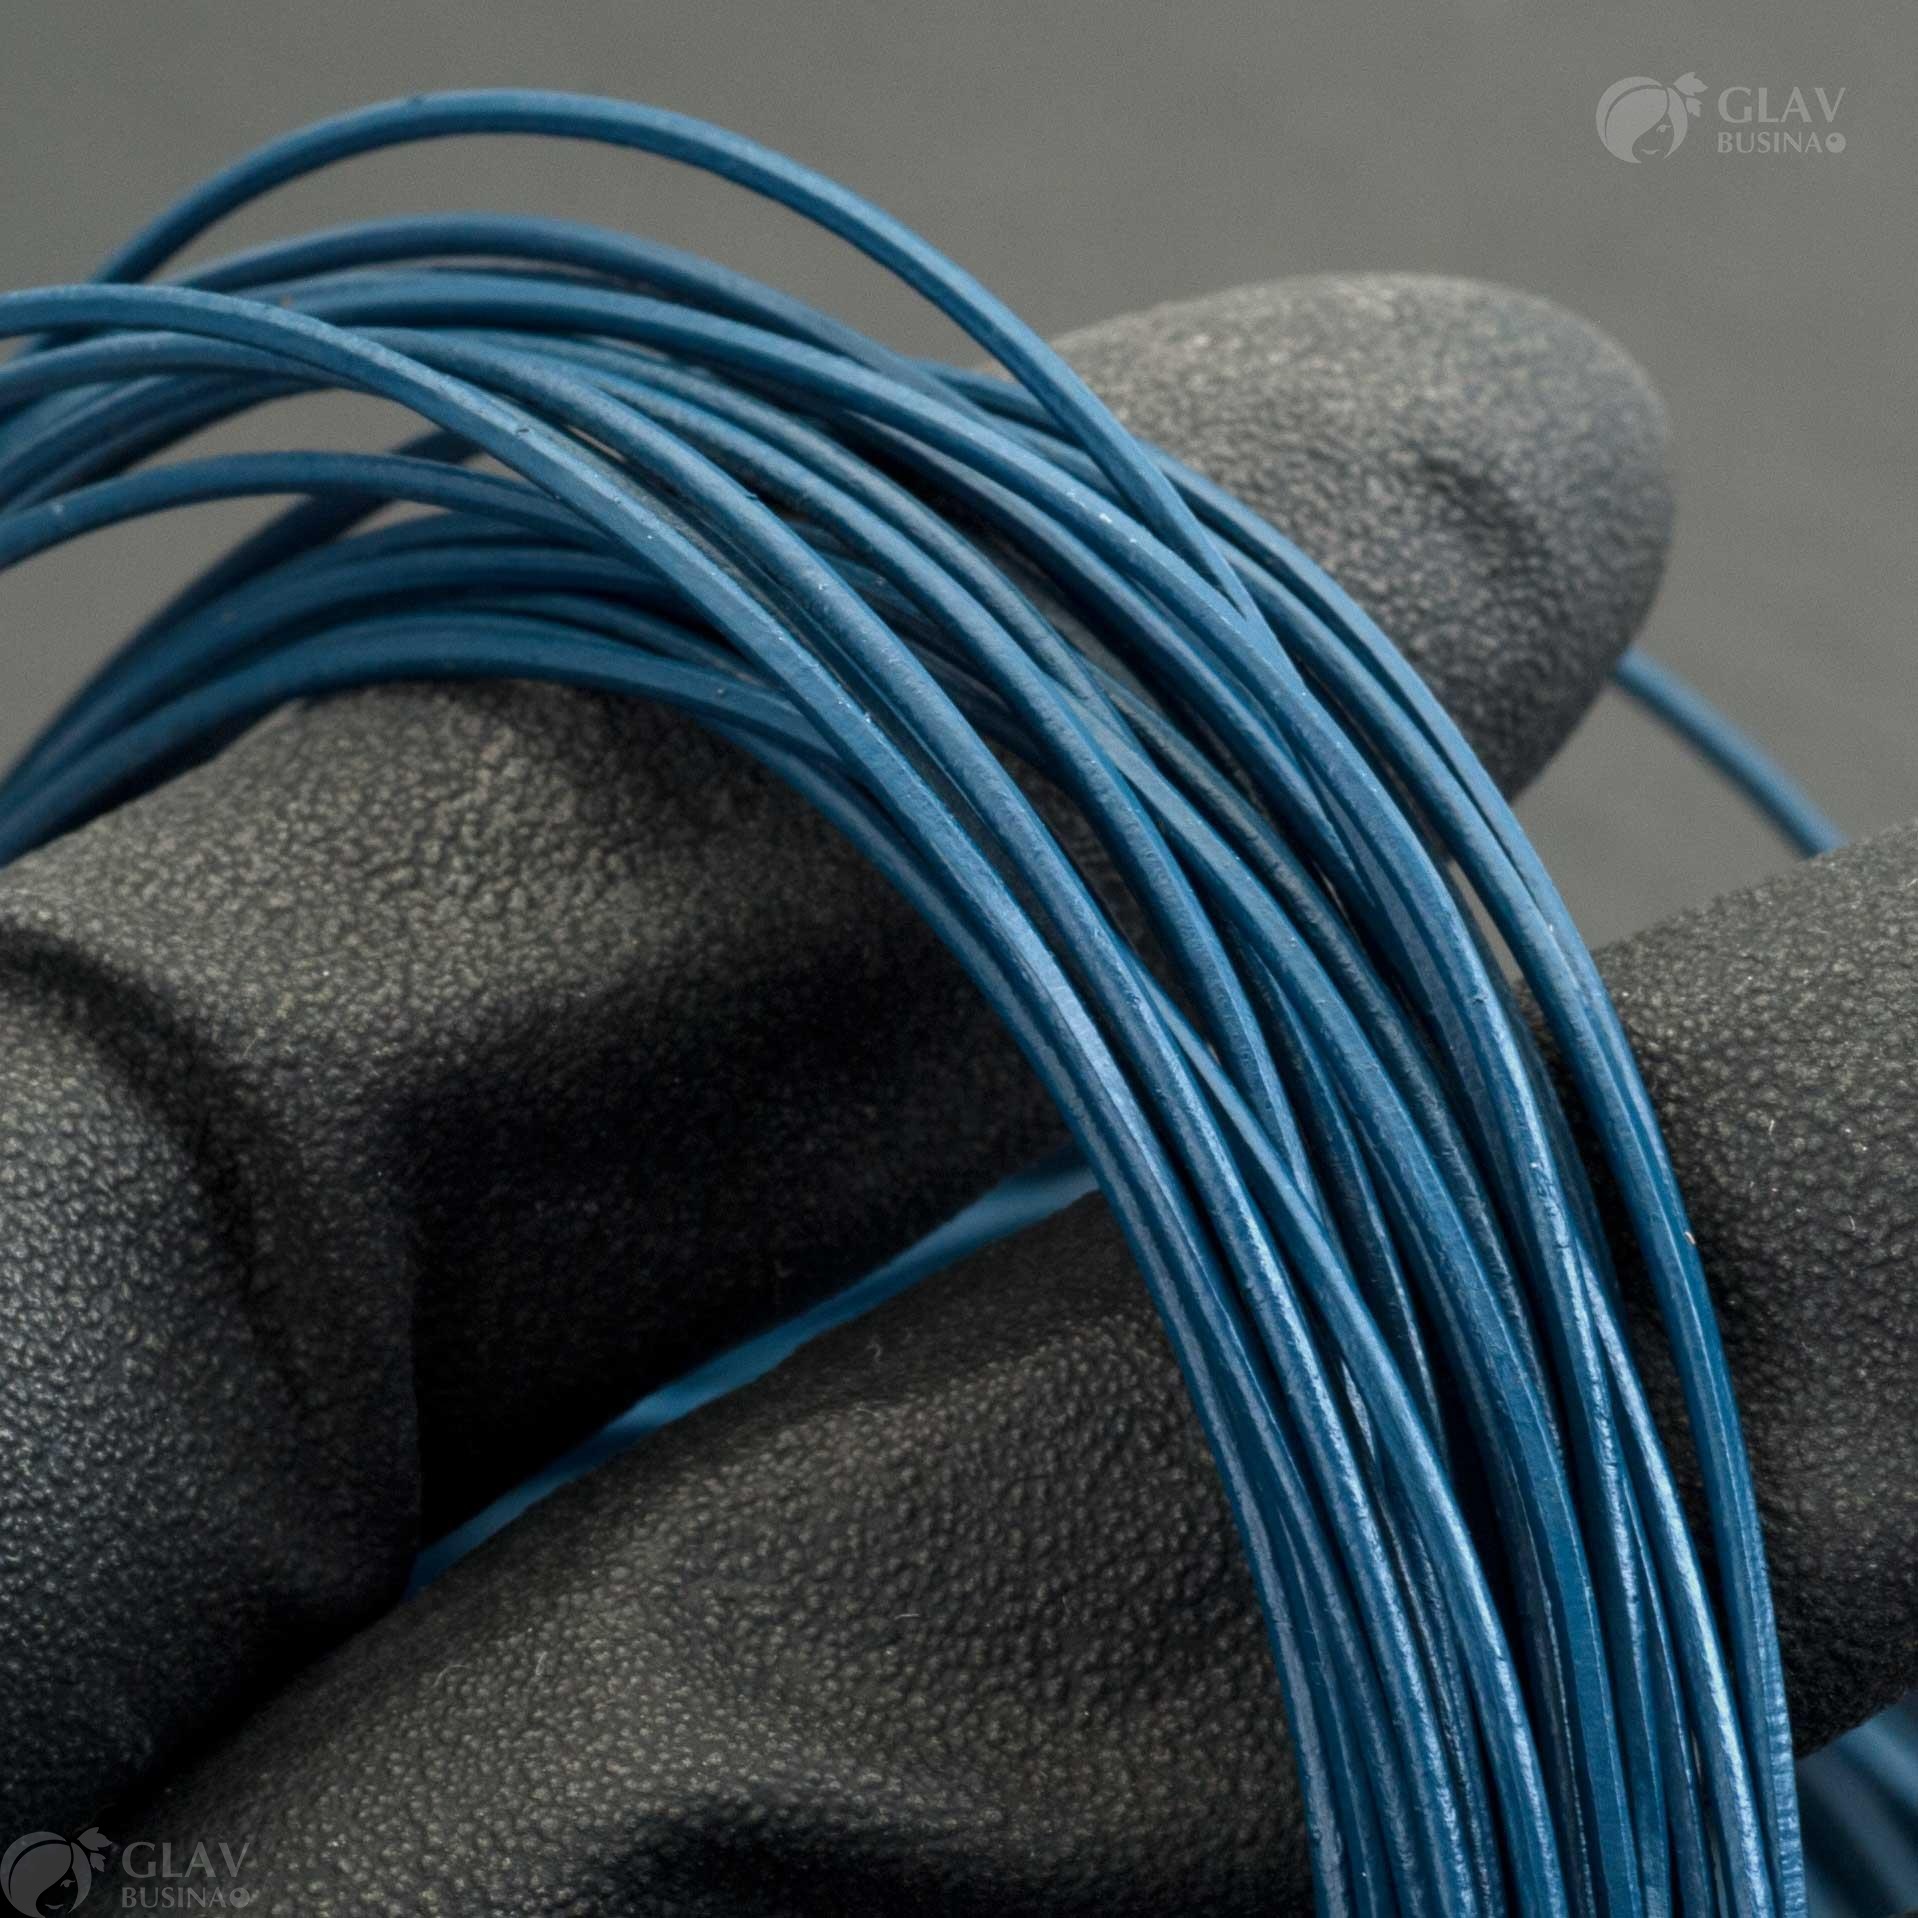 Глянцевый круглый шнур из натуральной кожи темно-синего цвета, толщина 1 мм, продается на метраж для изготовления кулонов и браслетов, качественный и экономичный.